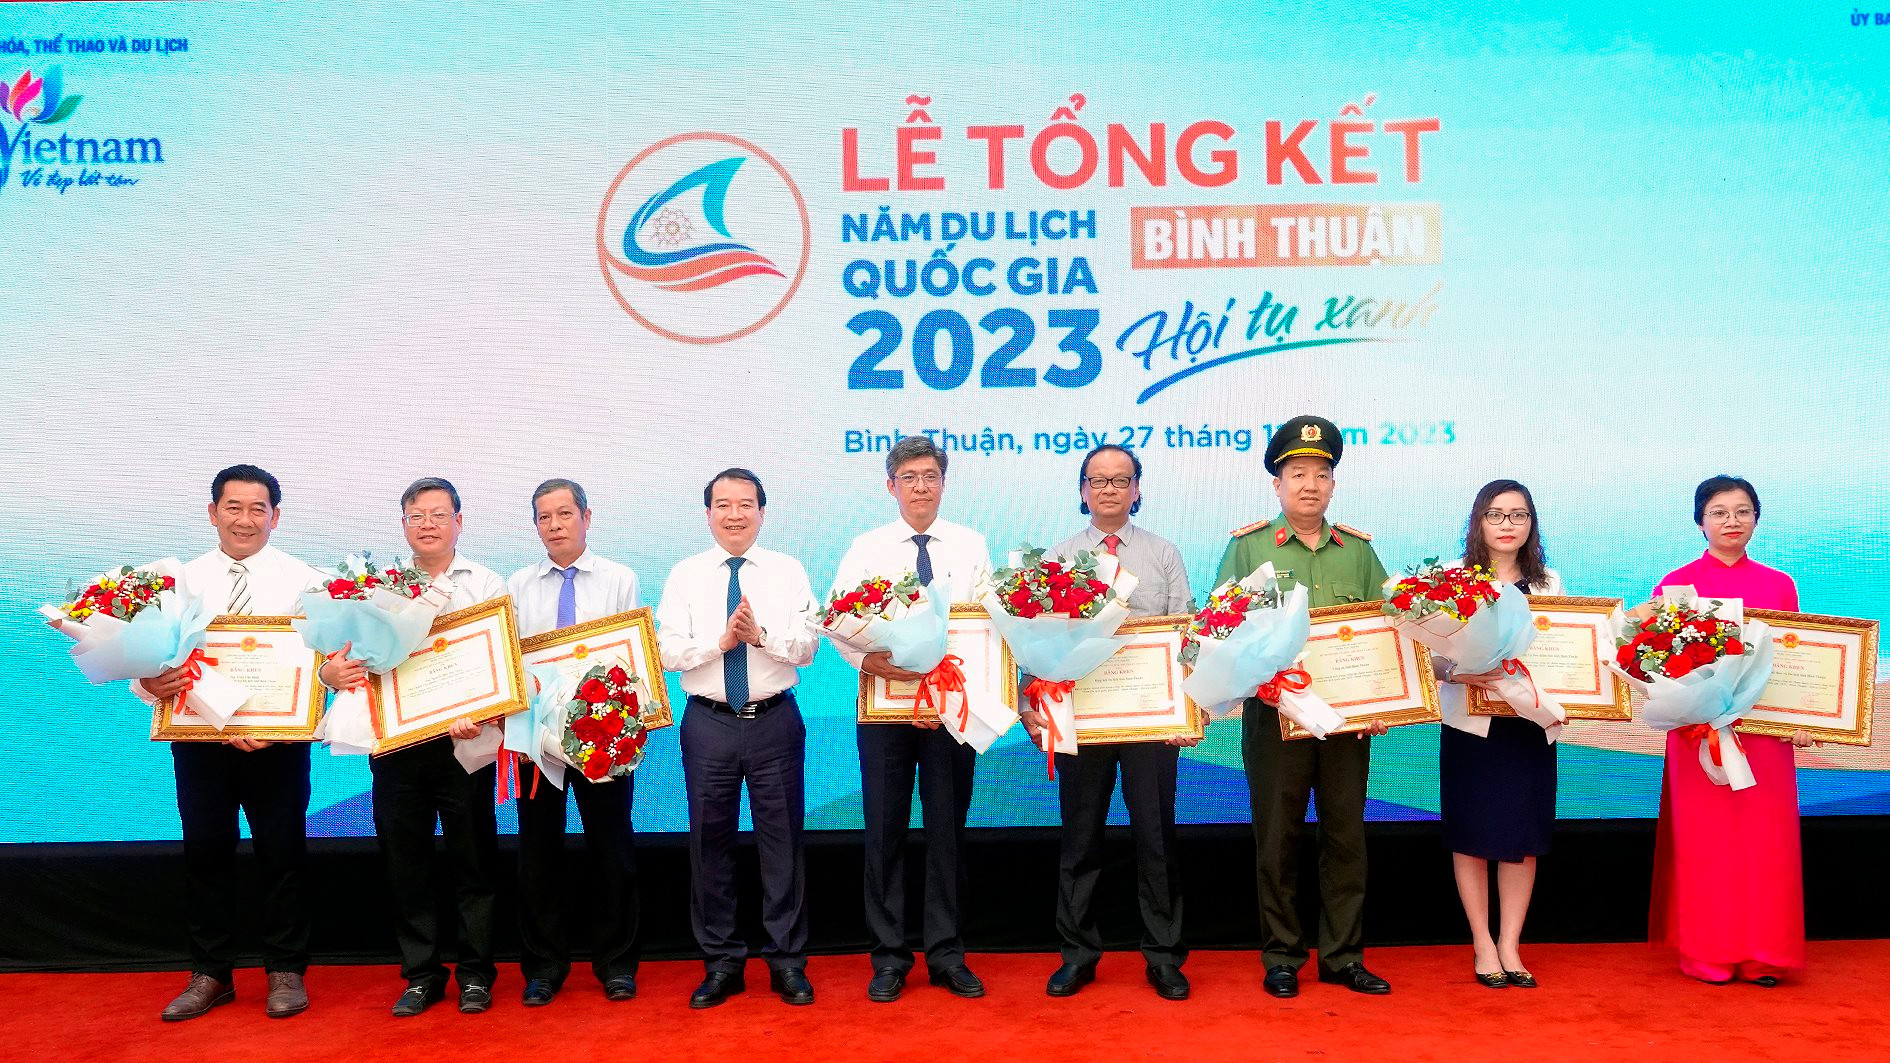 Năm Du lịch Quốc gia - Bình Thuận 2023 góp phần tích cực phát triển kinh tế - xã hội